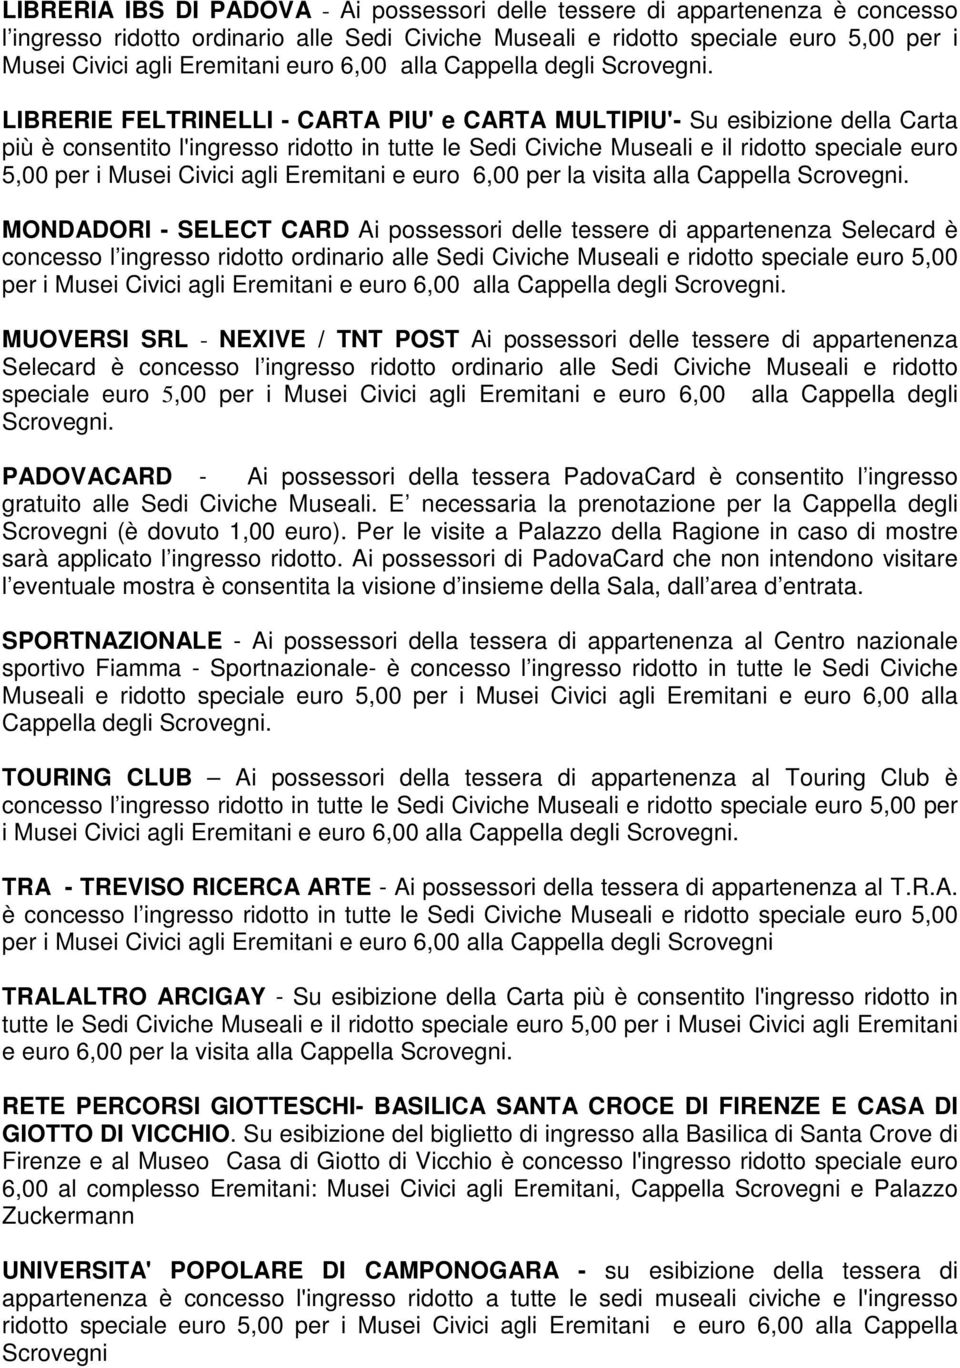 euro 5,00 per i Musei Civici agli Eremitani e euro 6,00 per la visita alla Cappella MONDADORI - SELECT CARD Ai possessori delle tessere di appartenenza Selecard è concesso l ingresso ridotto